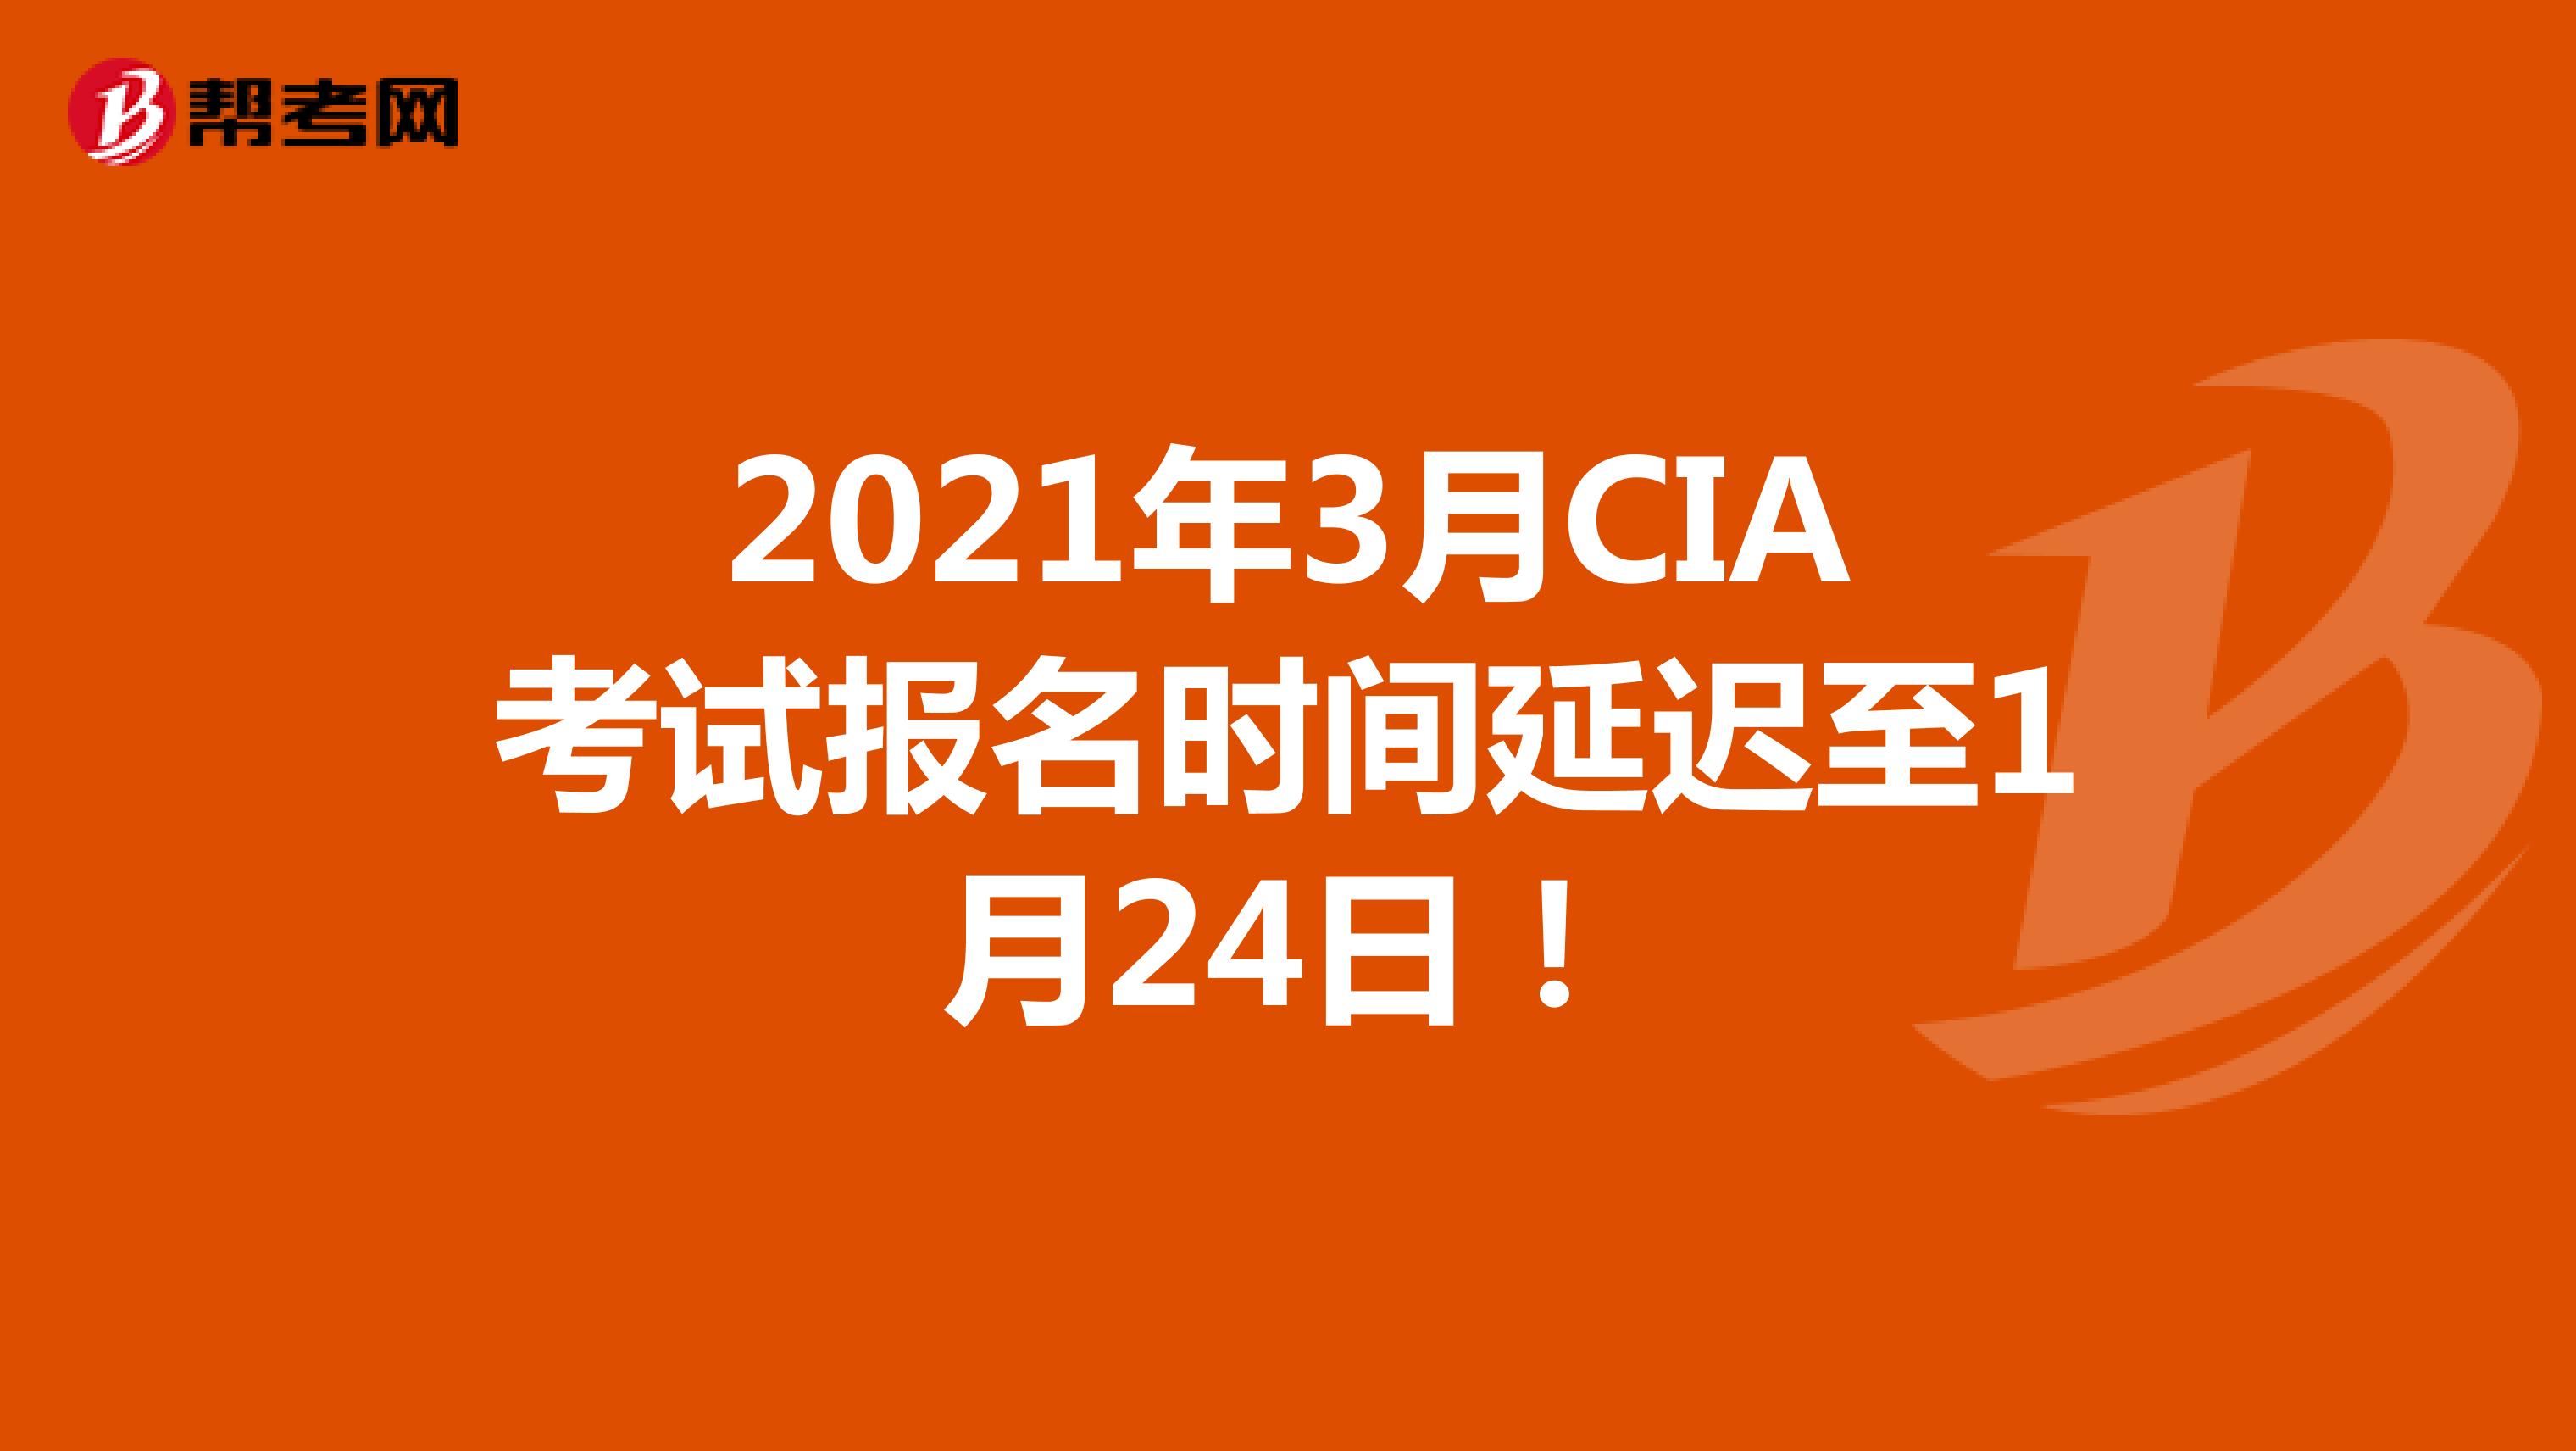 2021年3月CIA考试报名时间延迟至1月24日！